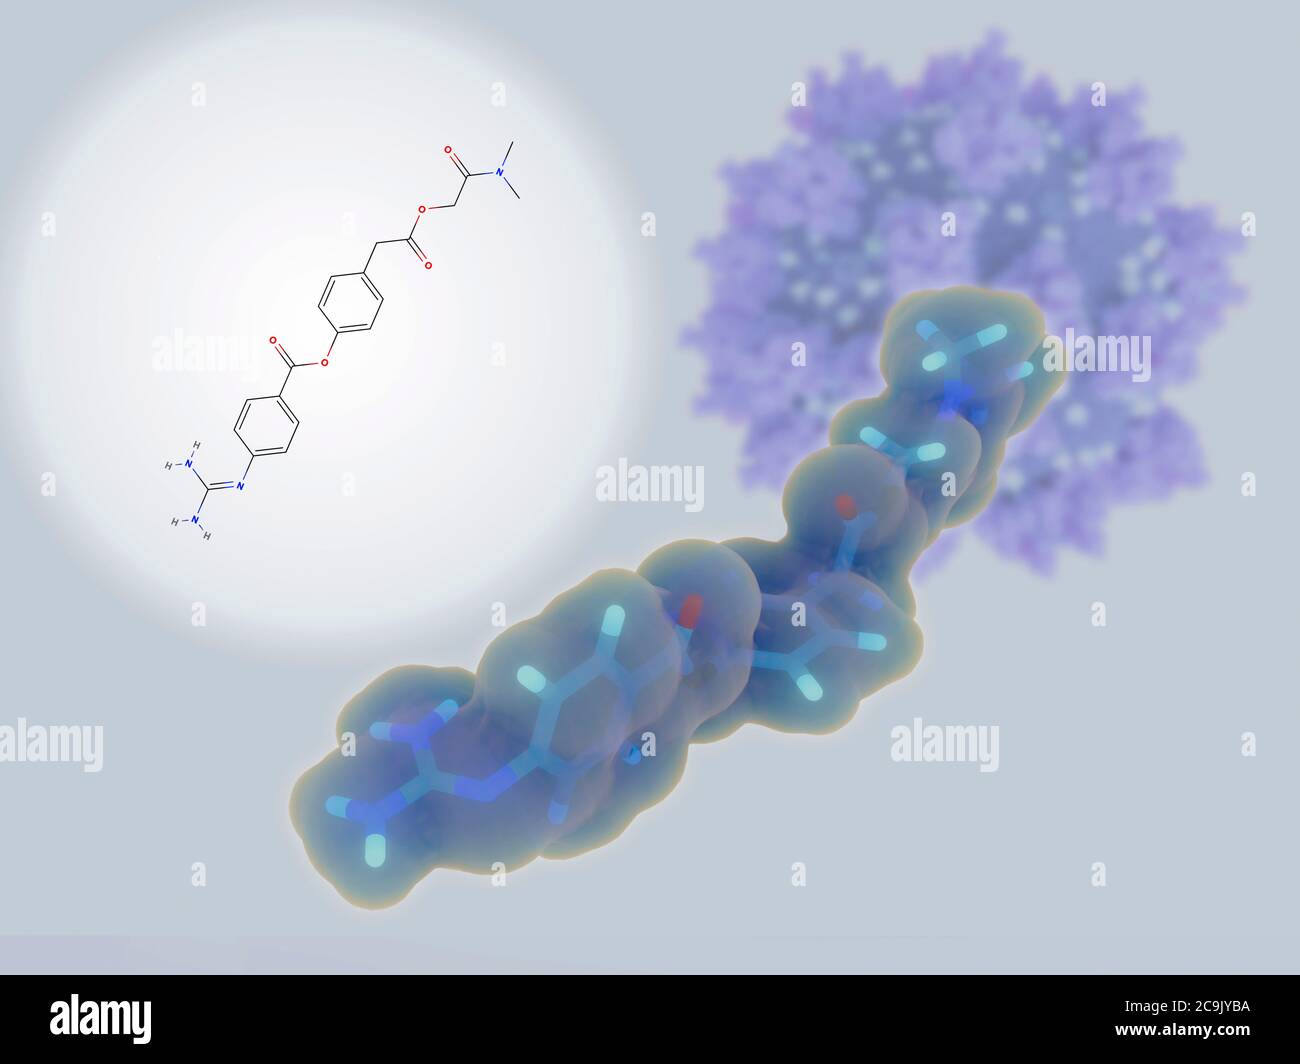 Illustrazione di molecole del camostat mesilato inibitore della proteasi e di una particella di coronavirus SARS-COV-2. Camostat è in fase di studio come trattamento Foto Stock